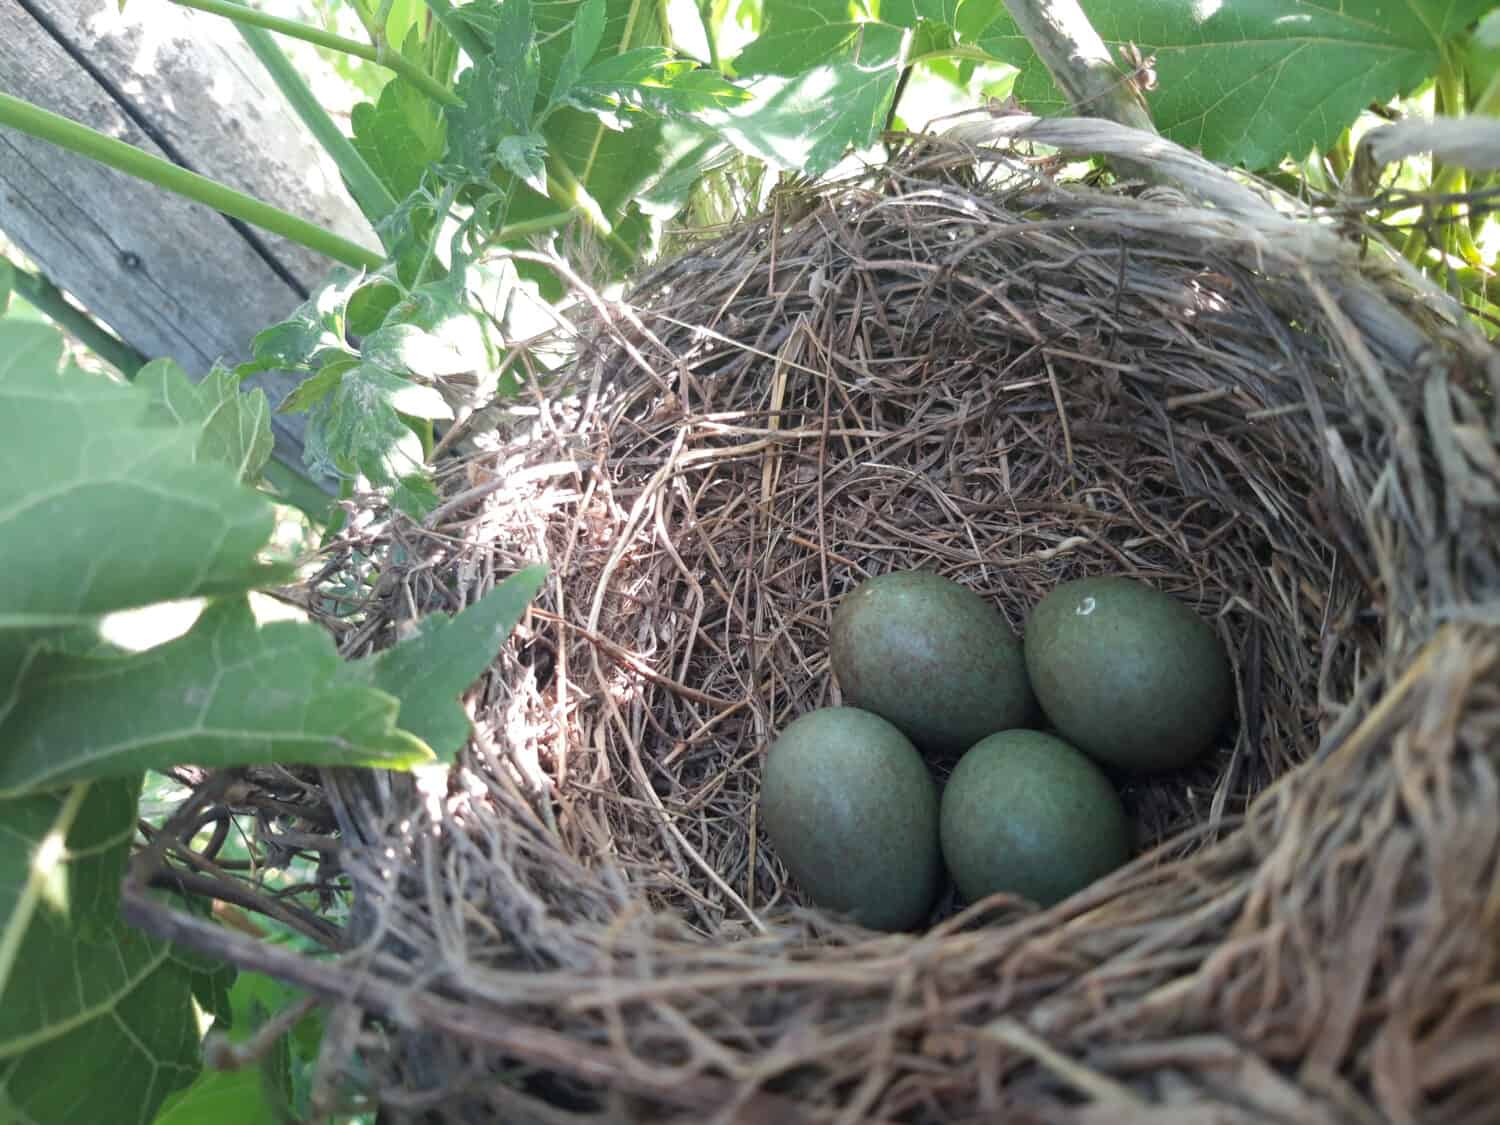 Uova nel nido dell'uccello.  Nido di corvo.  Casetta per gli uccelli sull'albero.